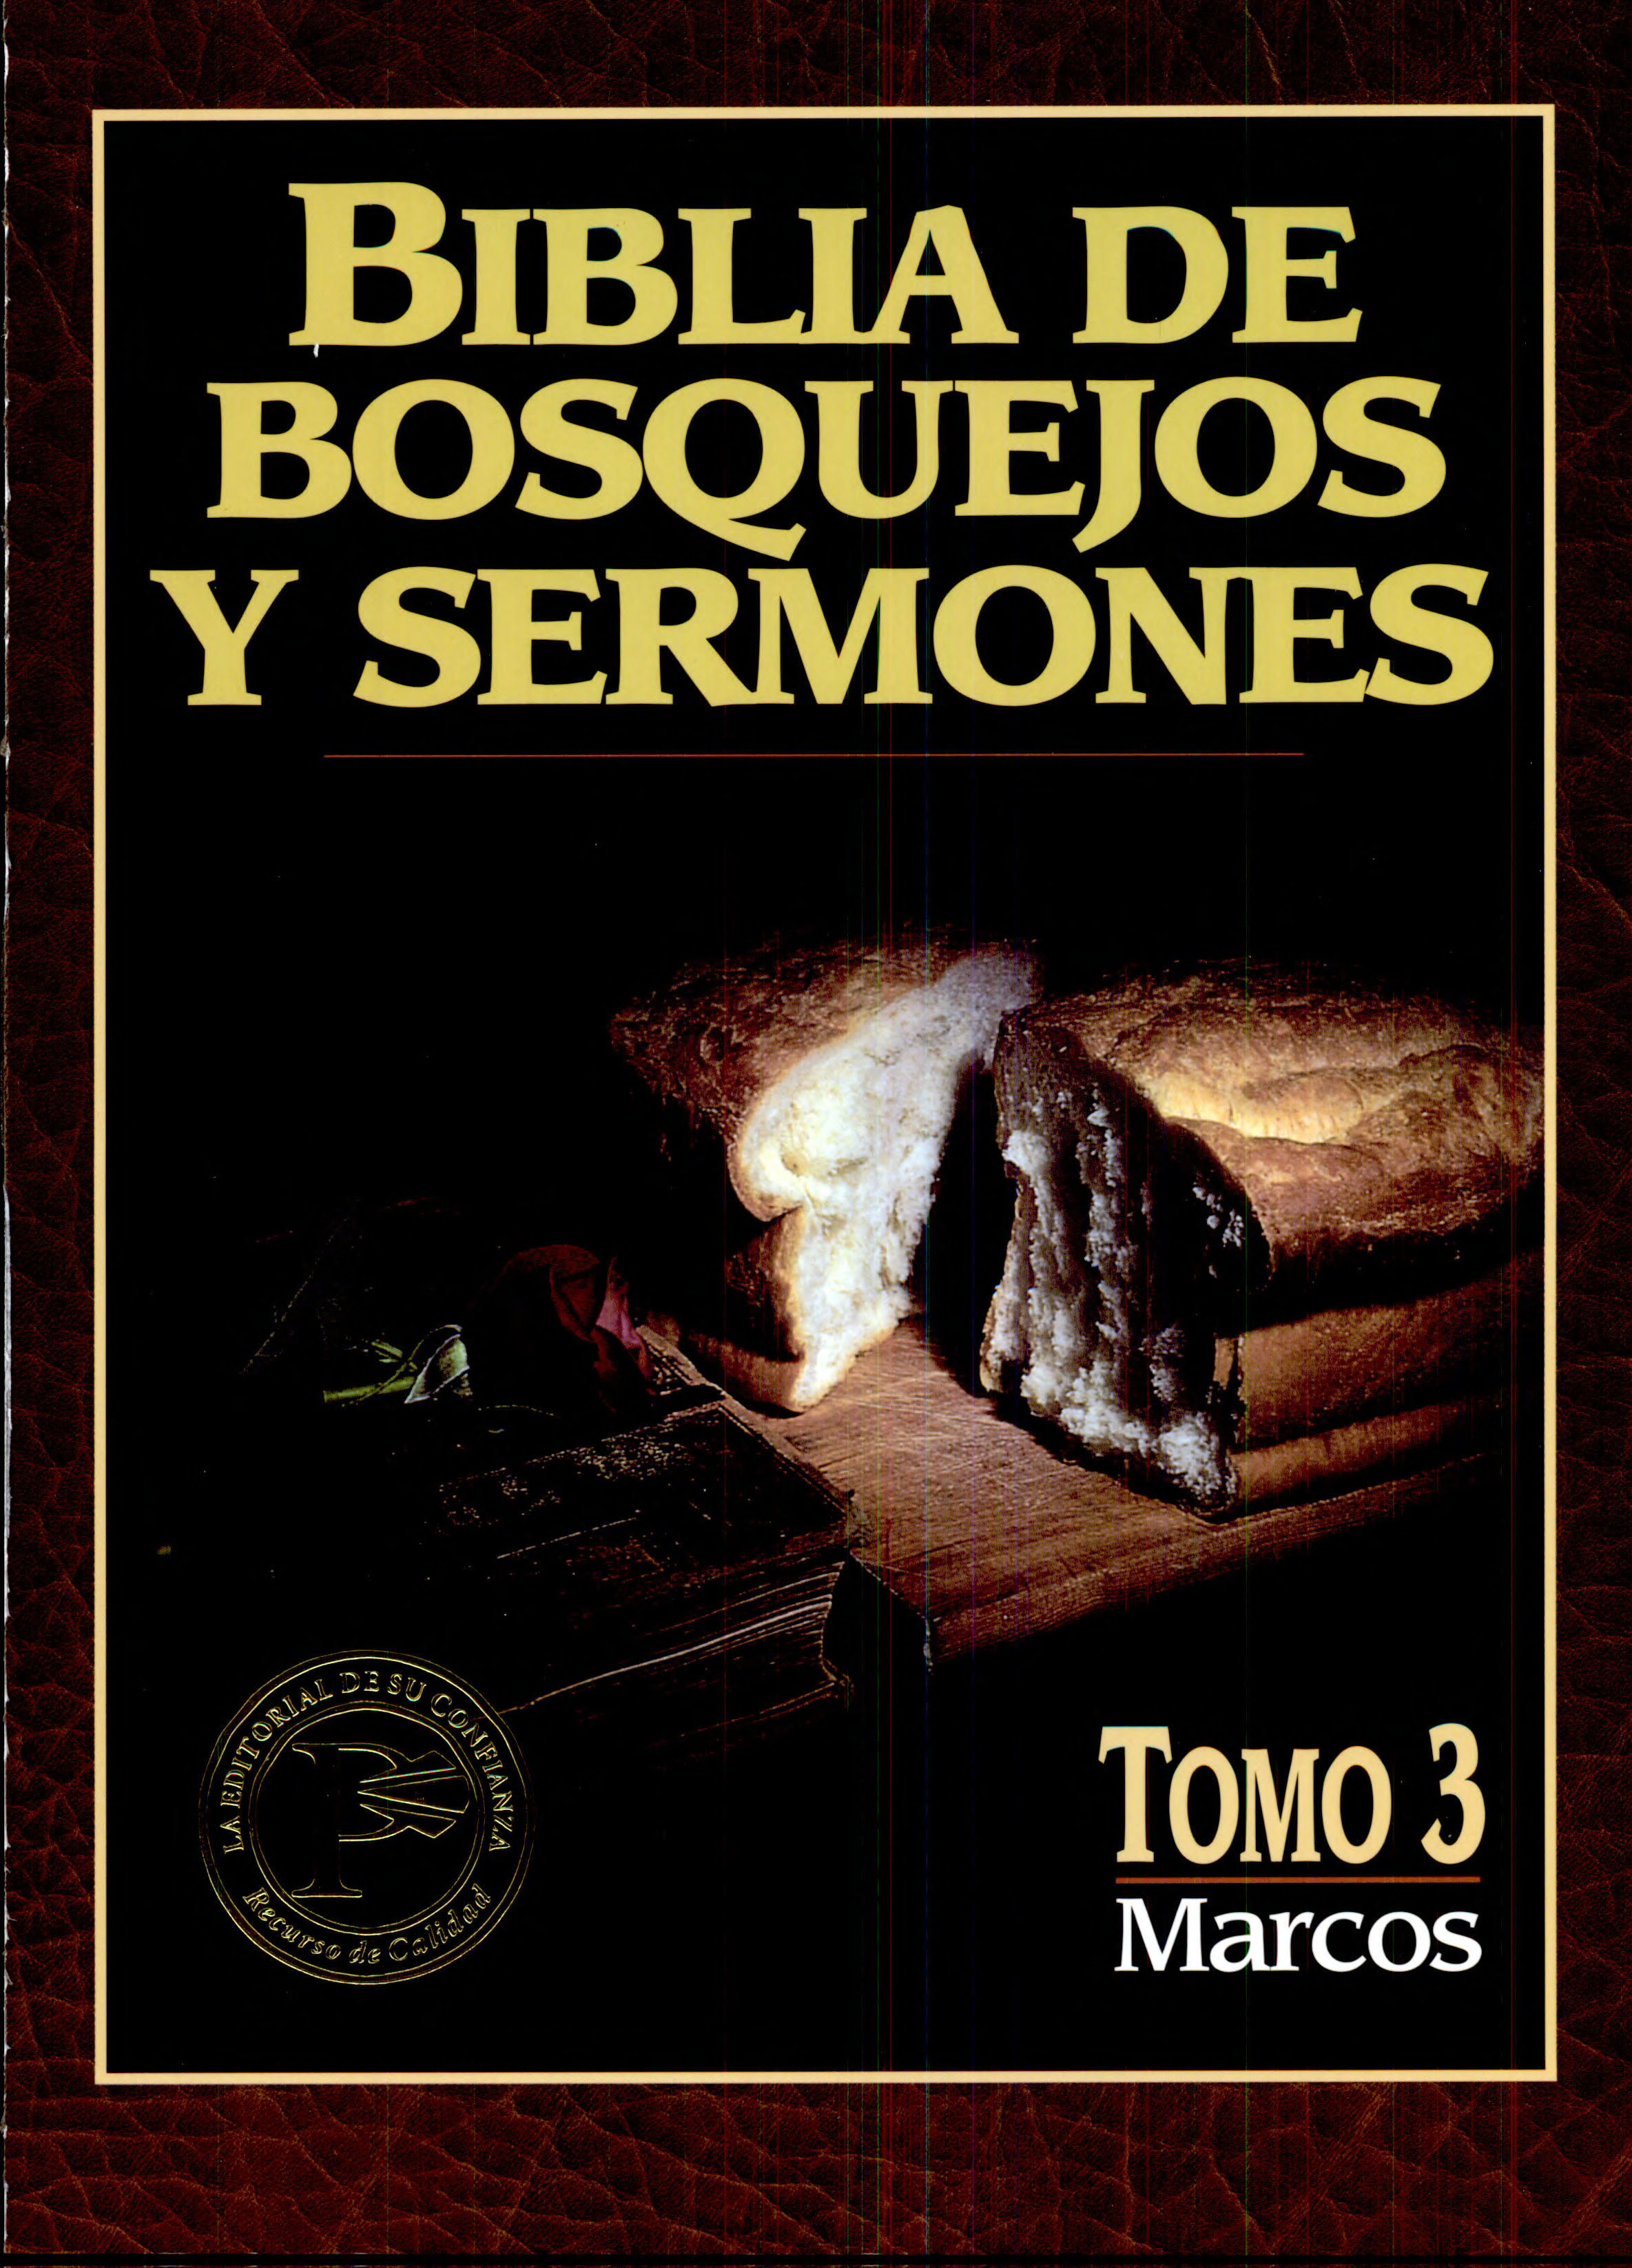 Biblia de Bosquejos y Sermones NT 3 Marcos